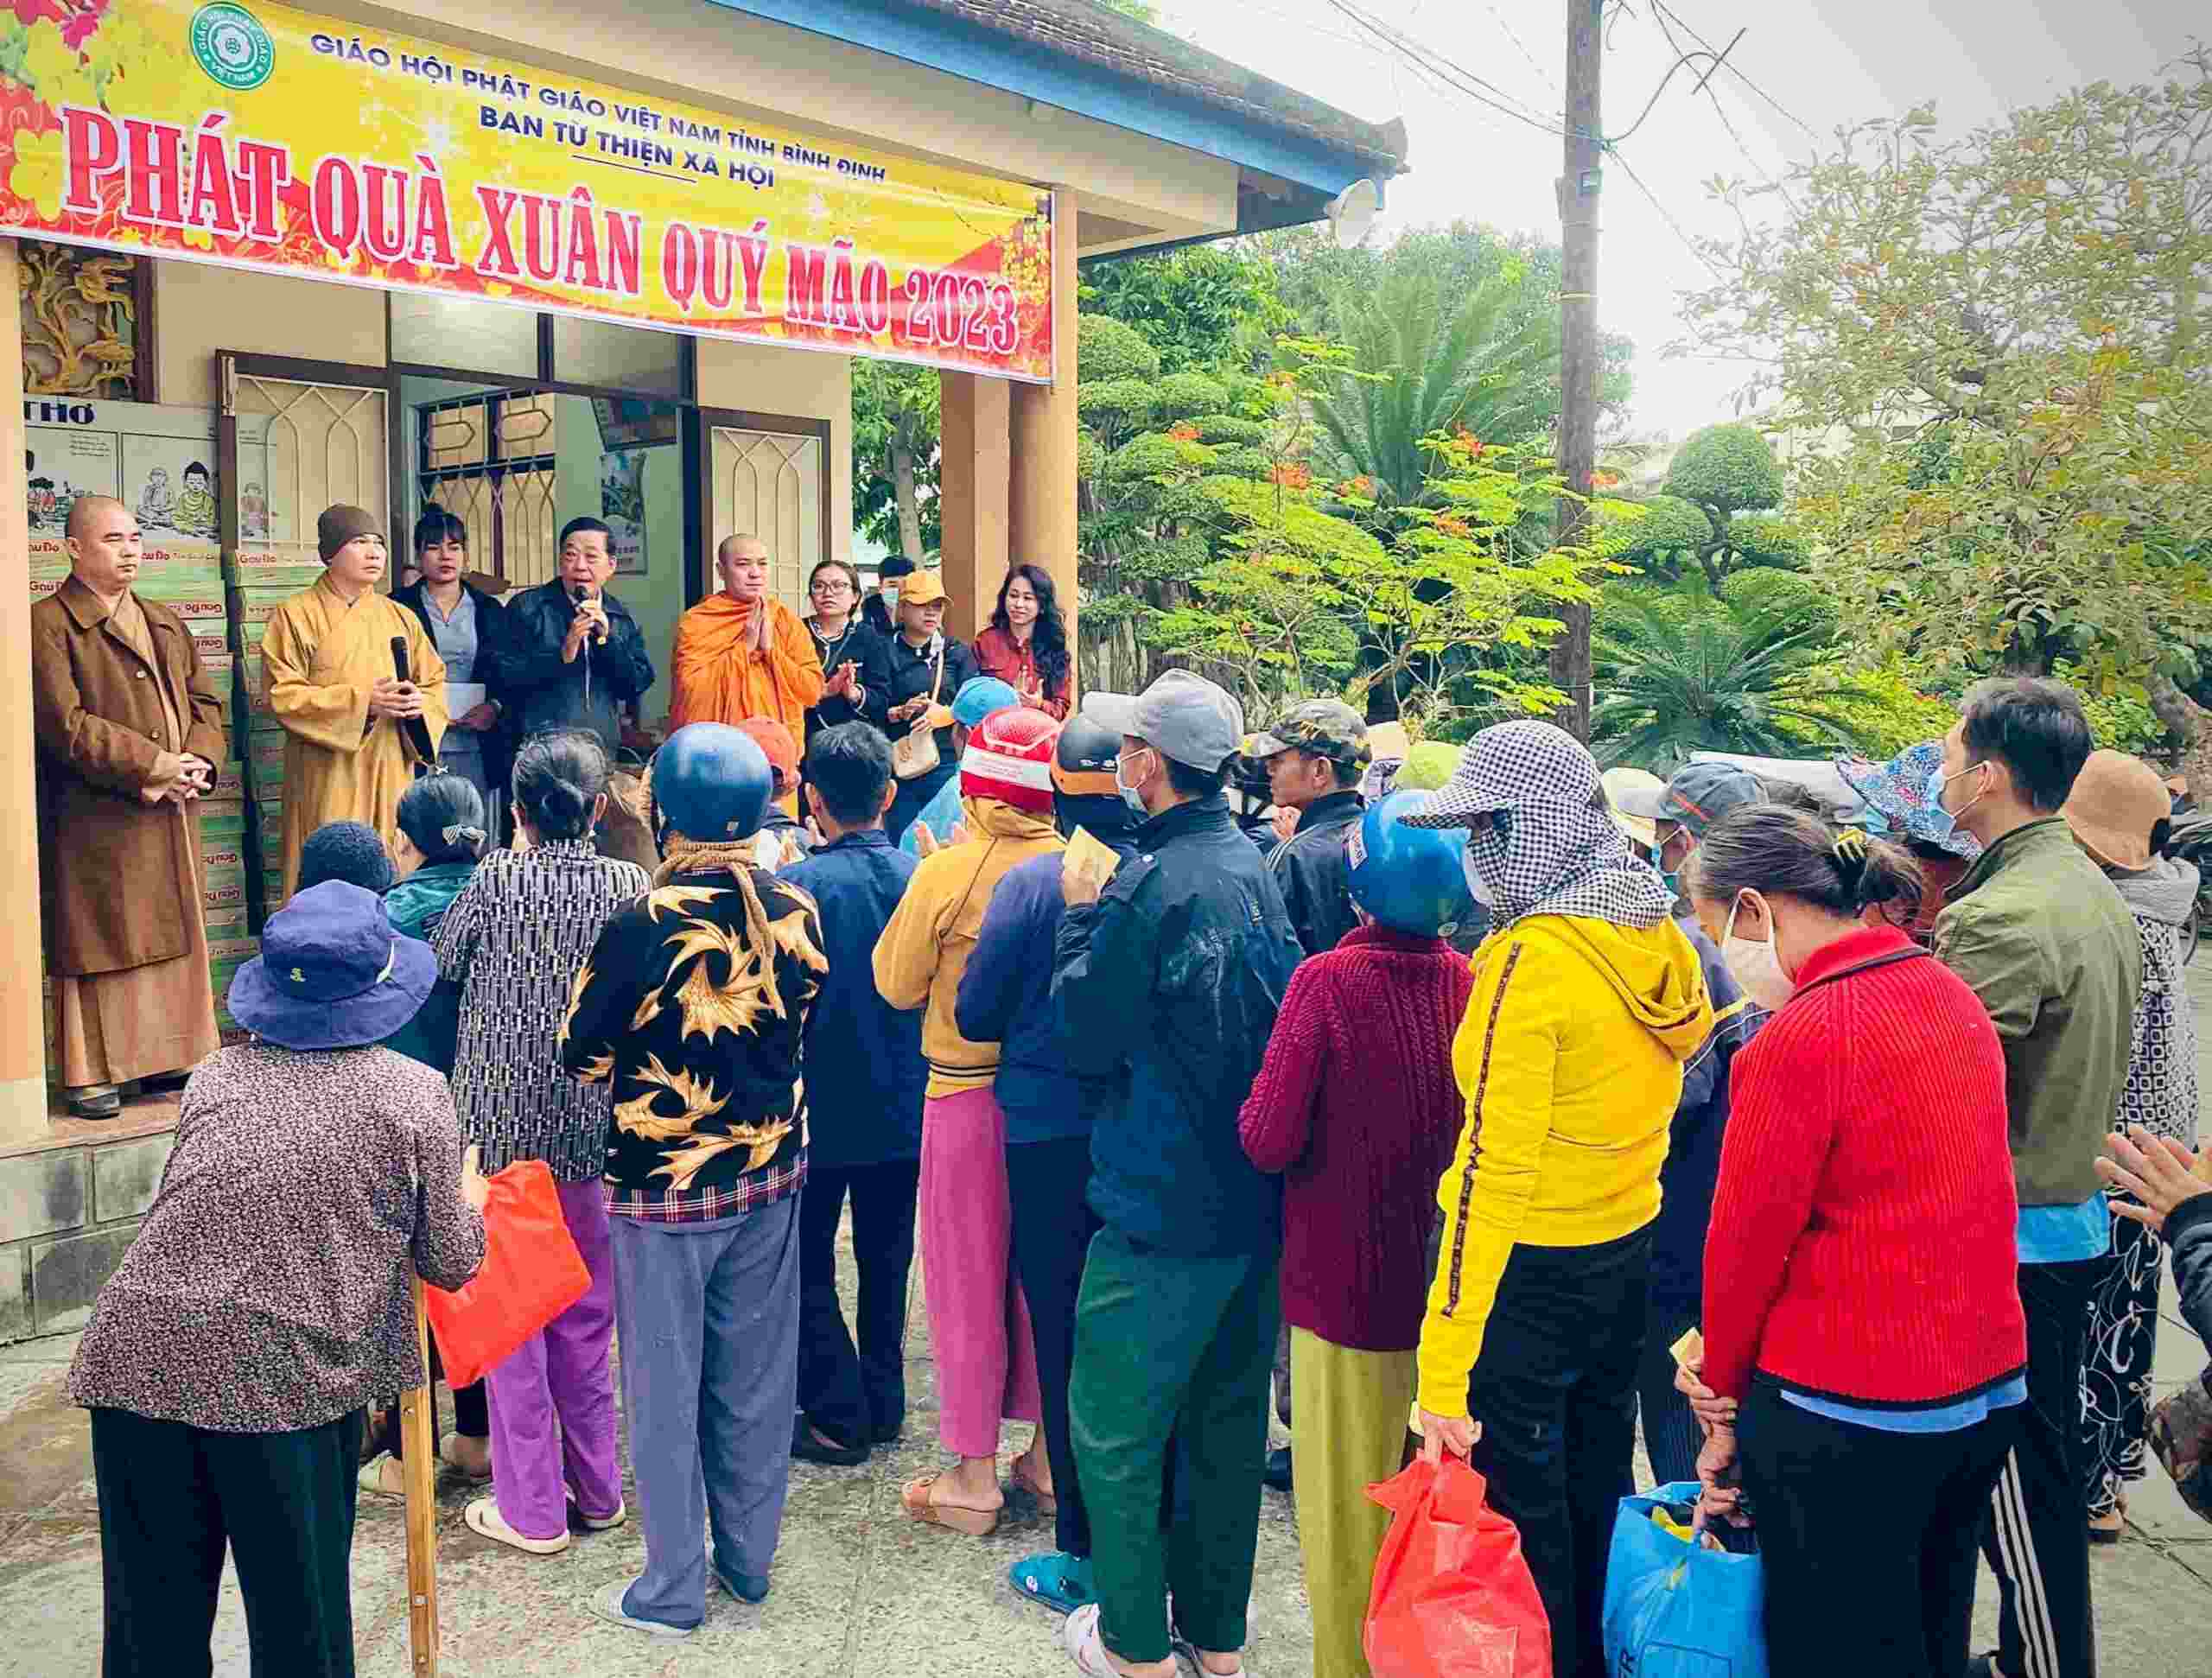 Ban Từ thiện xã hội Phật giáo tỉnh Bình Định phát quà “Đỏ lửa Mùa Xuân”.